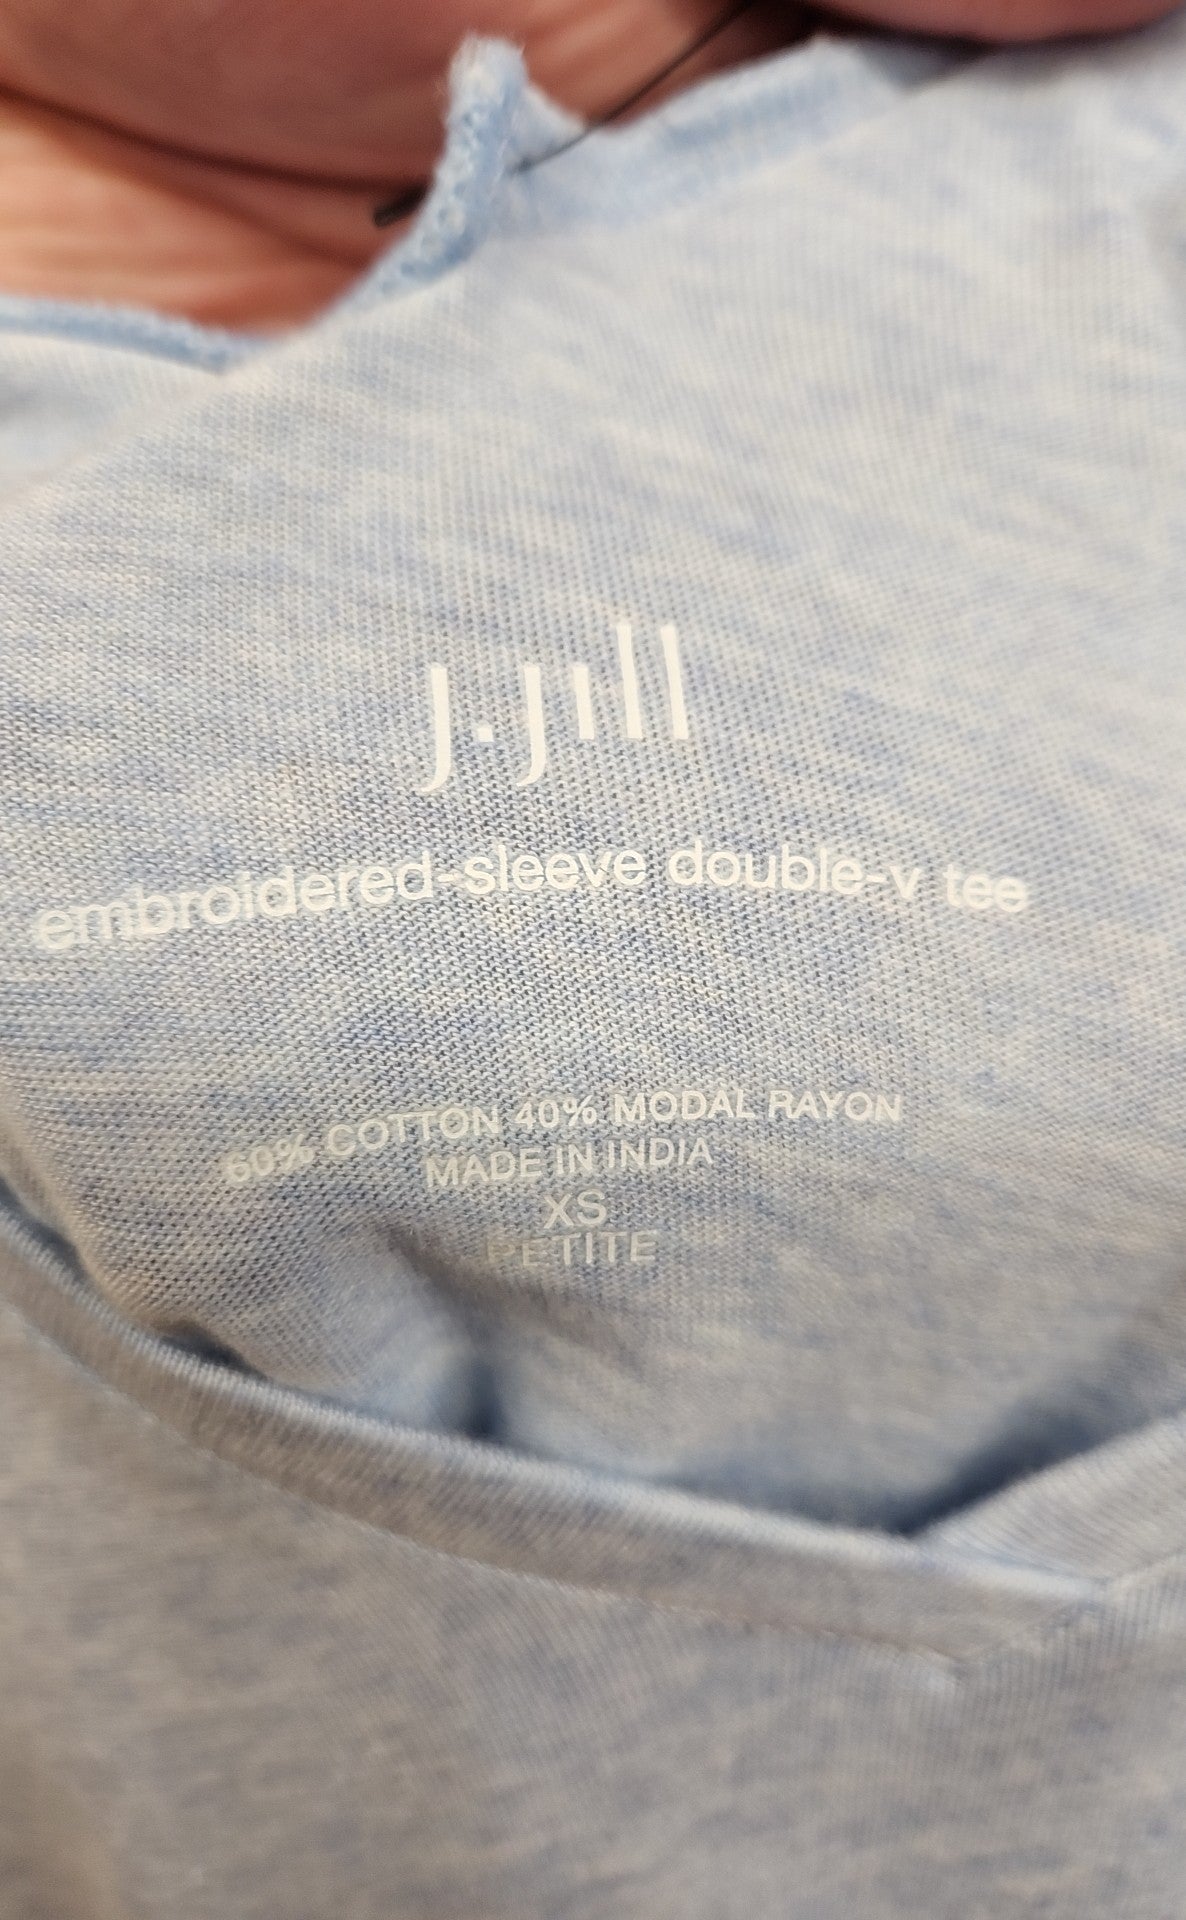 J Jill Women's Size XS Petite Blue 3/4 Sleeve Top